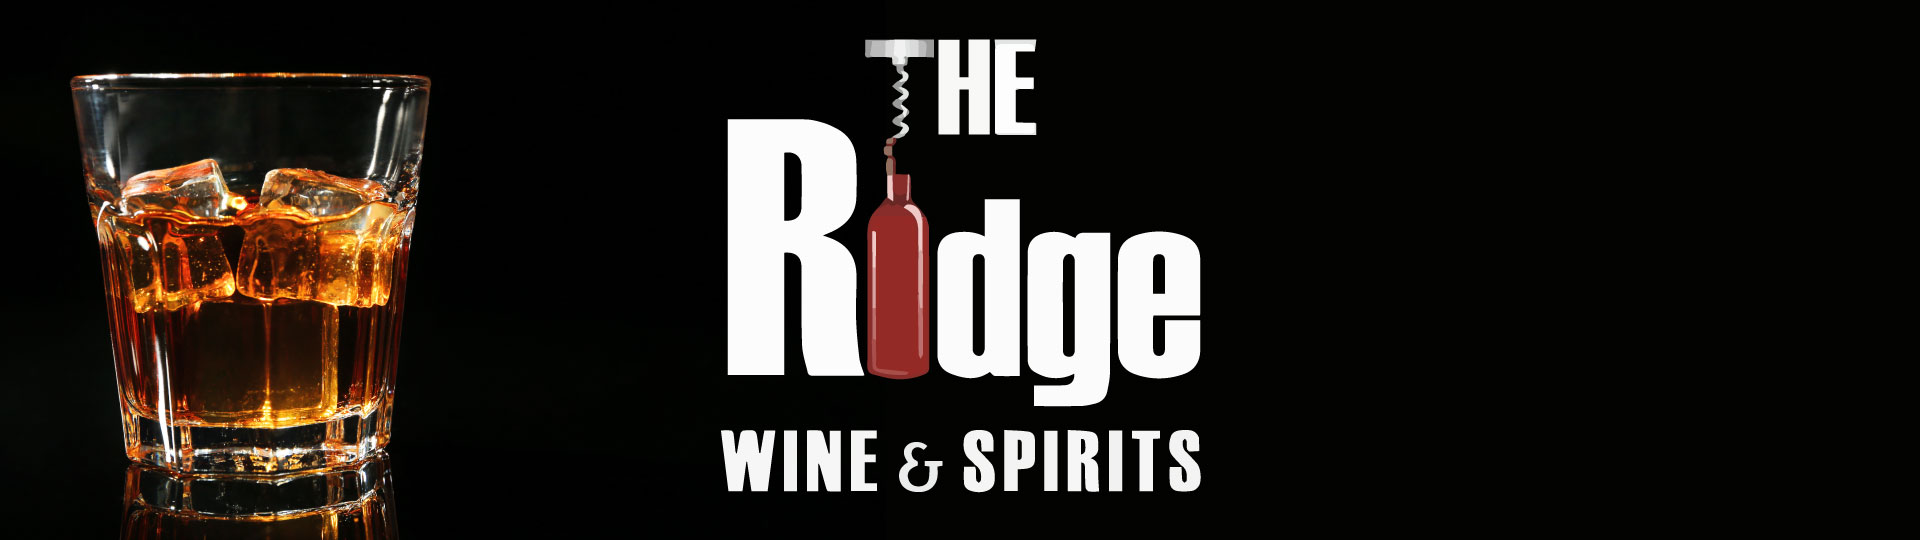 The Ridge Wine and Spirits